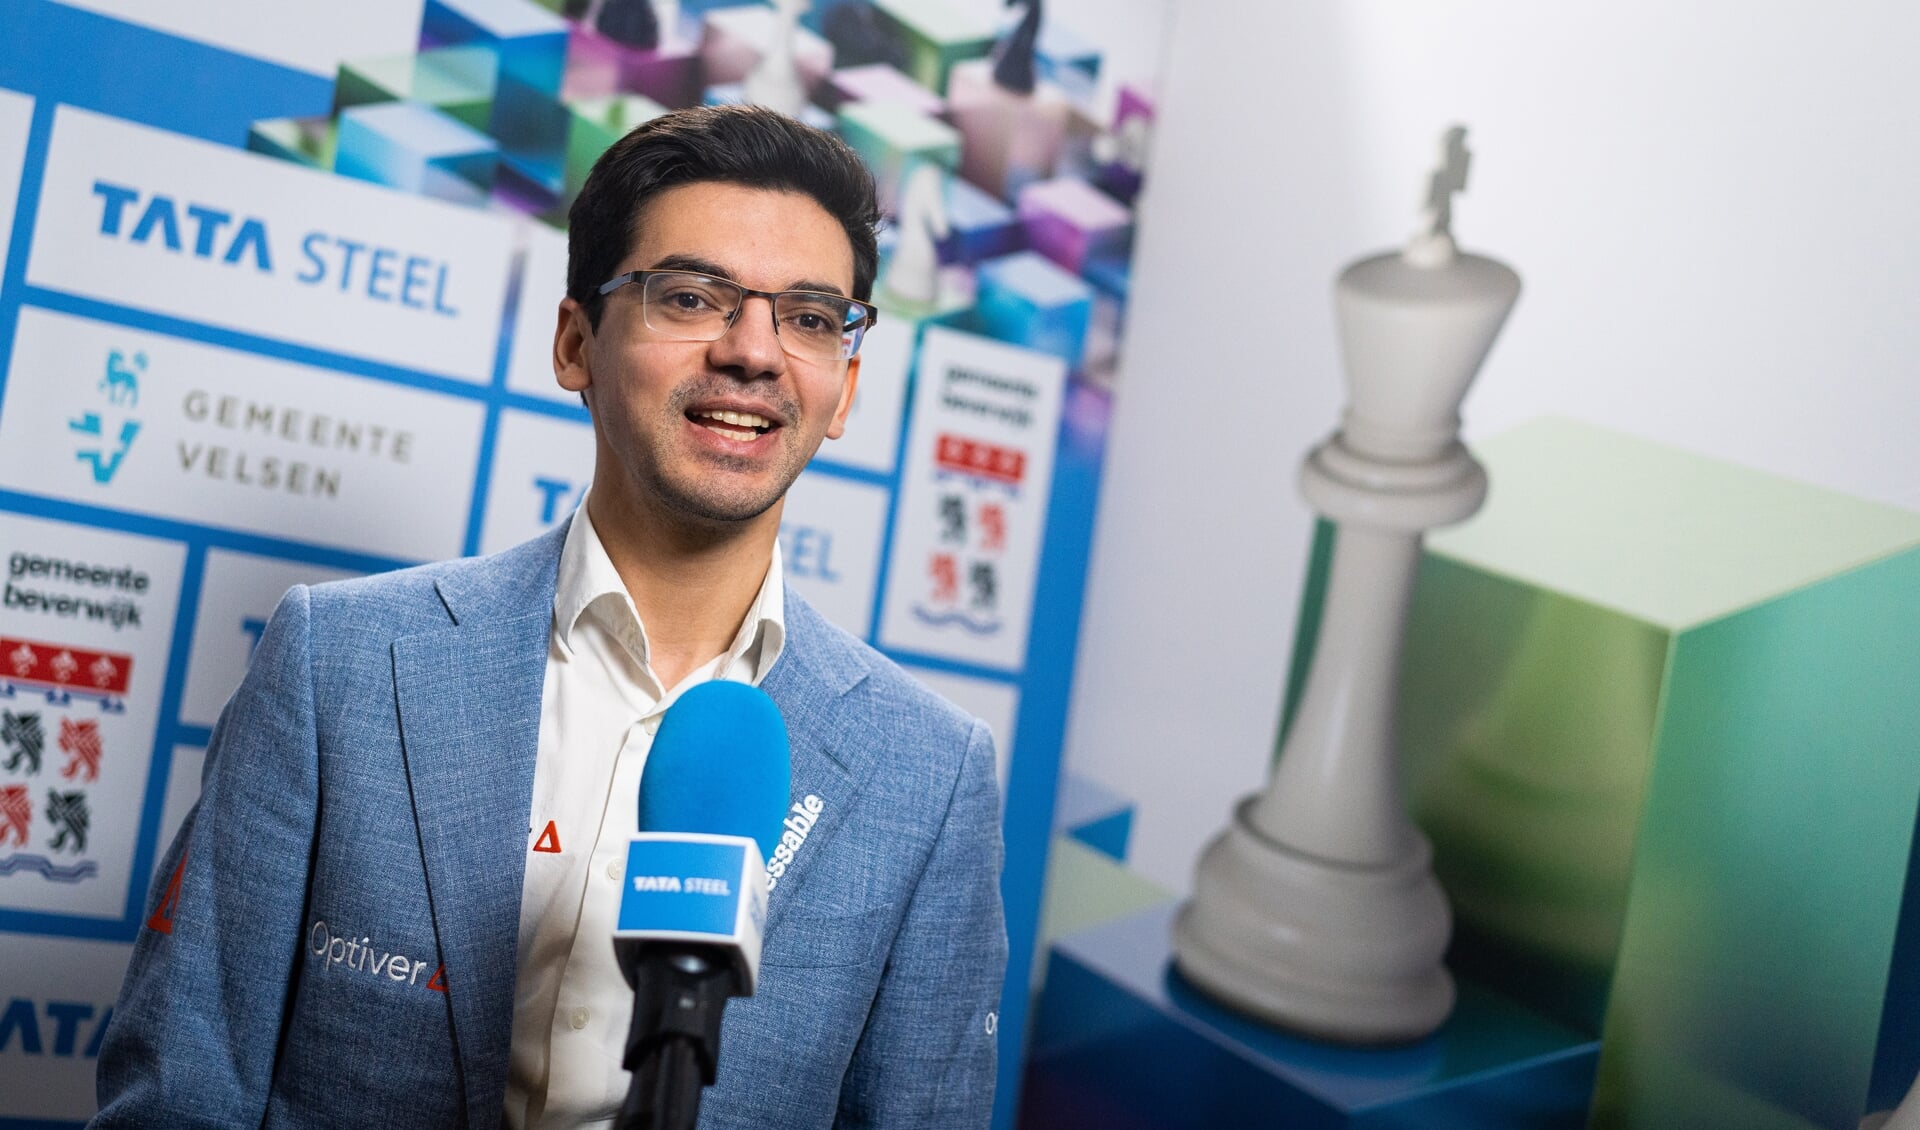 Anish Giri, winnaar van de 85e editie van het Tata Steel Chess Tounament.